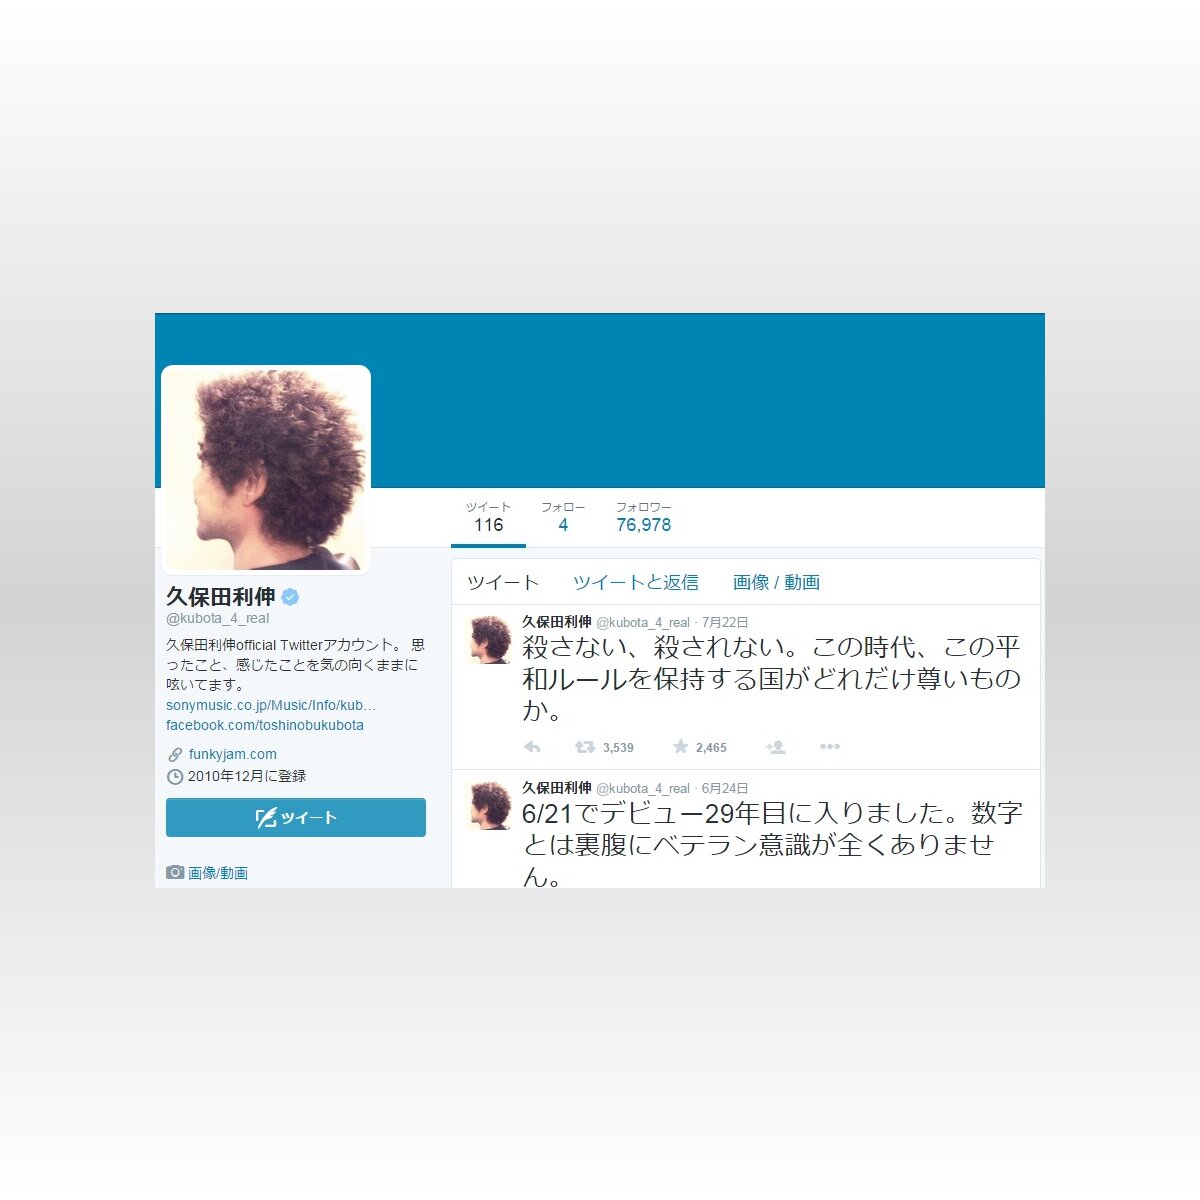 久保田利伸 平和ルール 発言でtwitter炎上 2015年7月23日